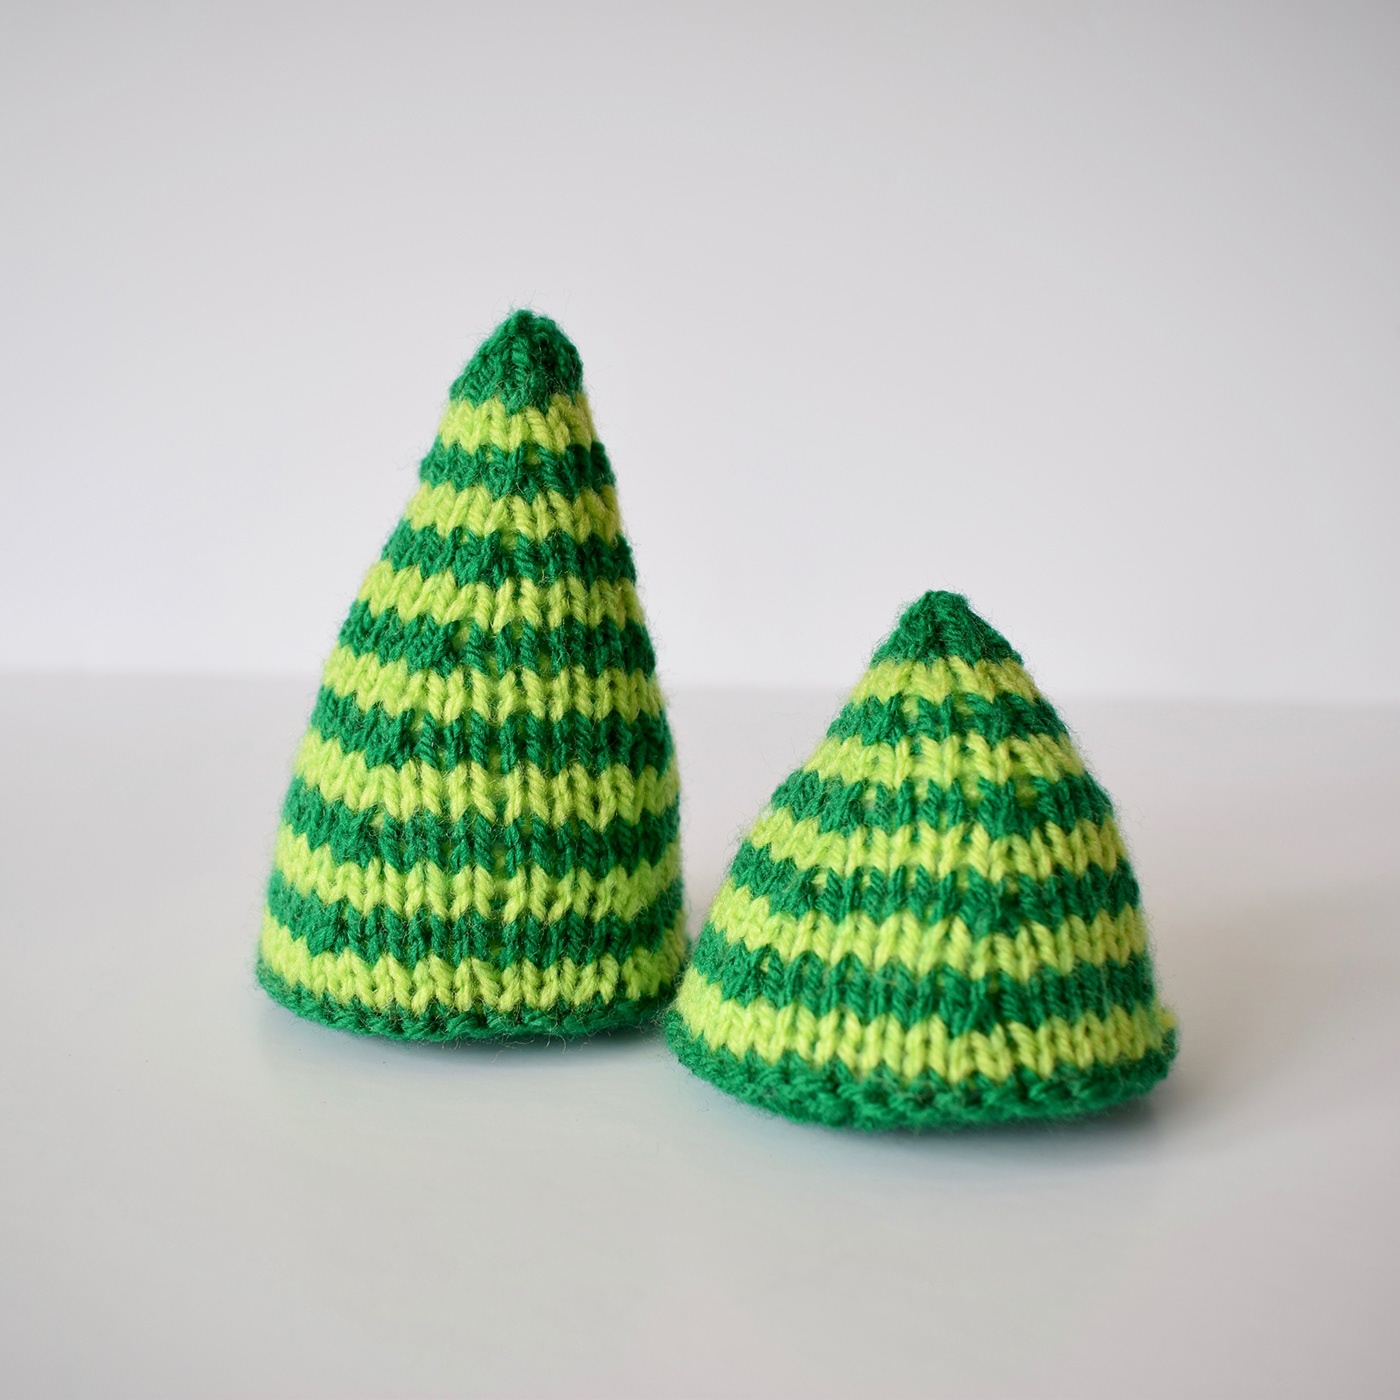 Christmas knitting knitters handmade